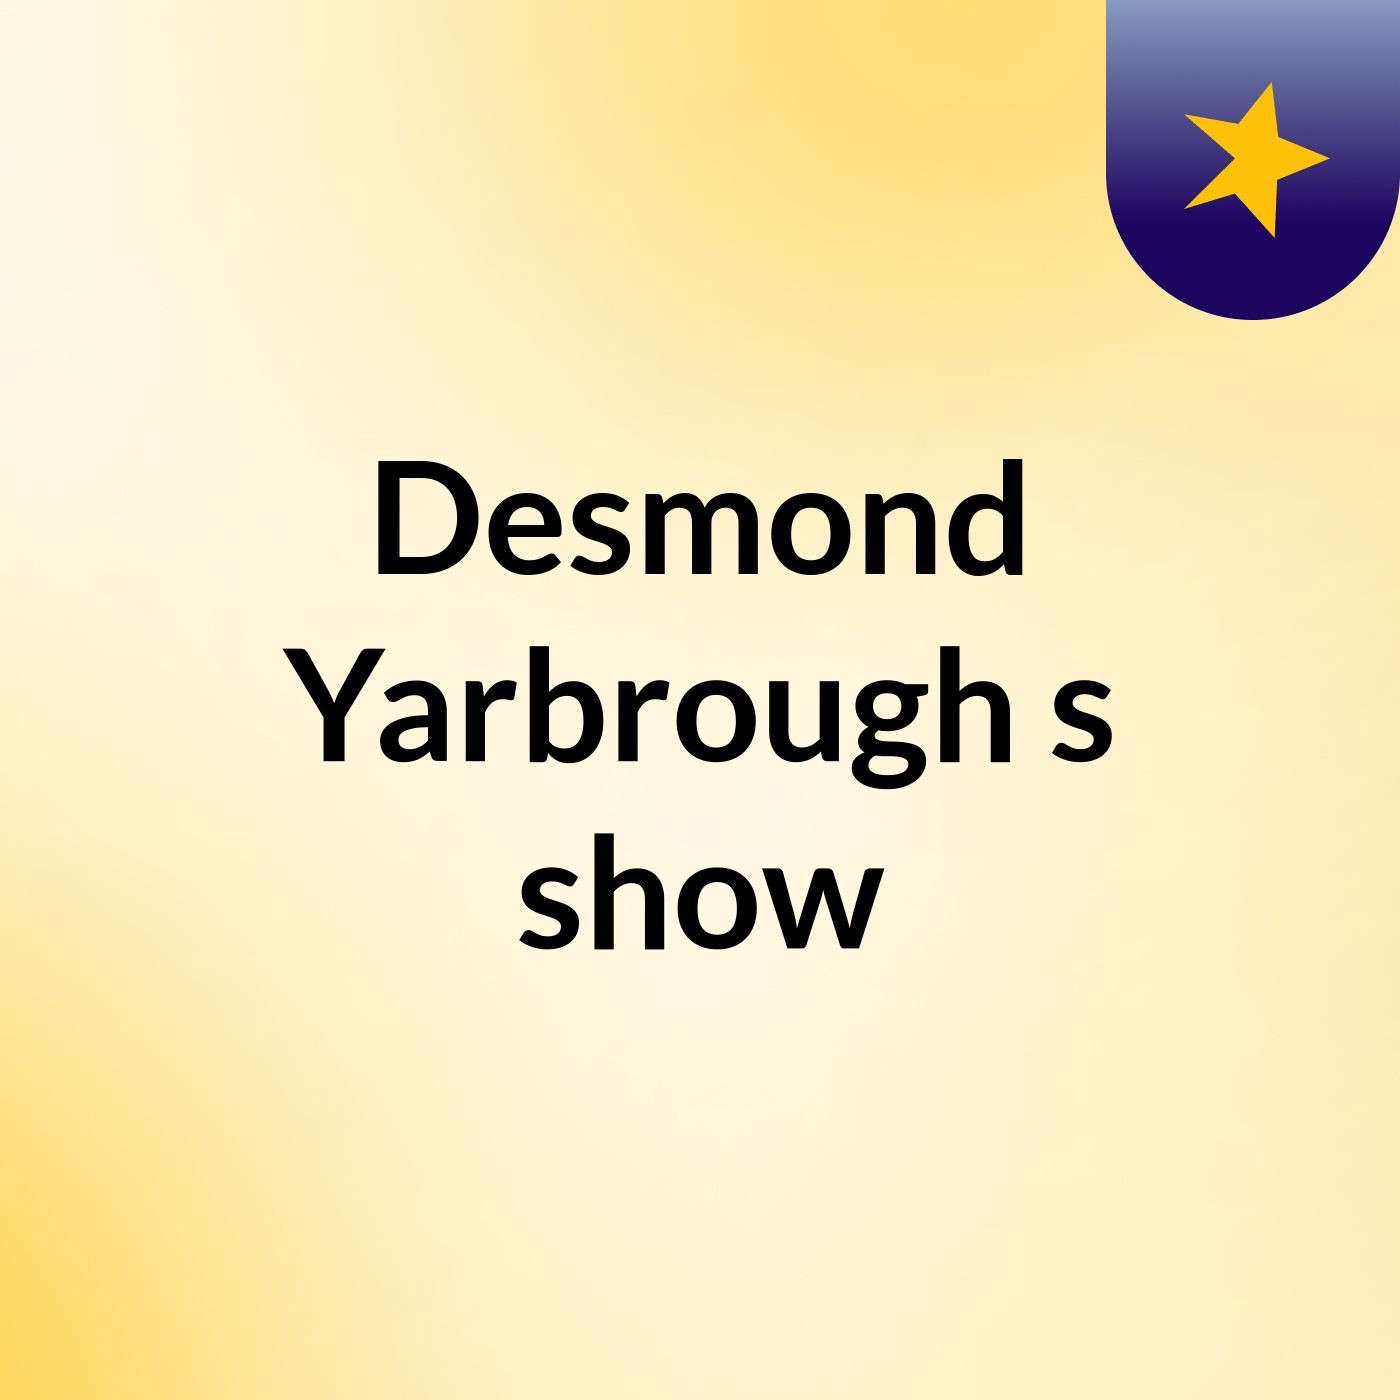 Episode 22 - Desmond Yarbrough's show